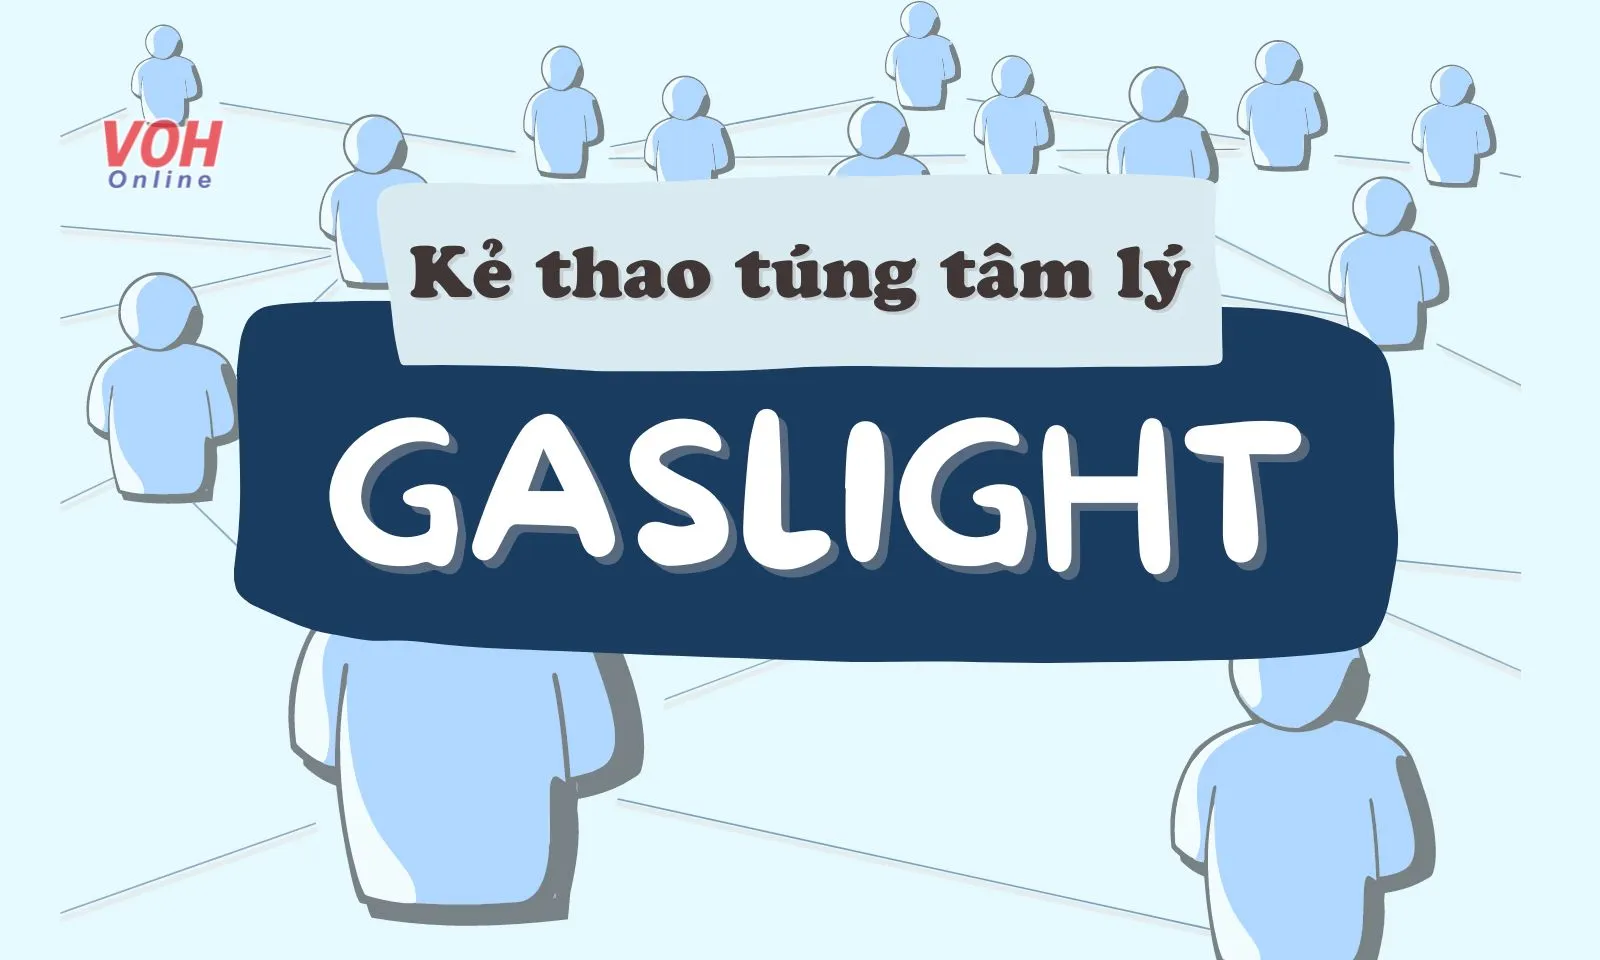 Gaslight là gì? Cách nhận diện “bậc thầy” thao túng tâm lý người khác